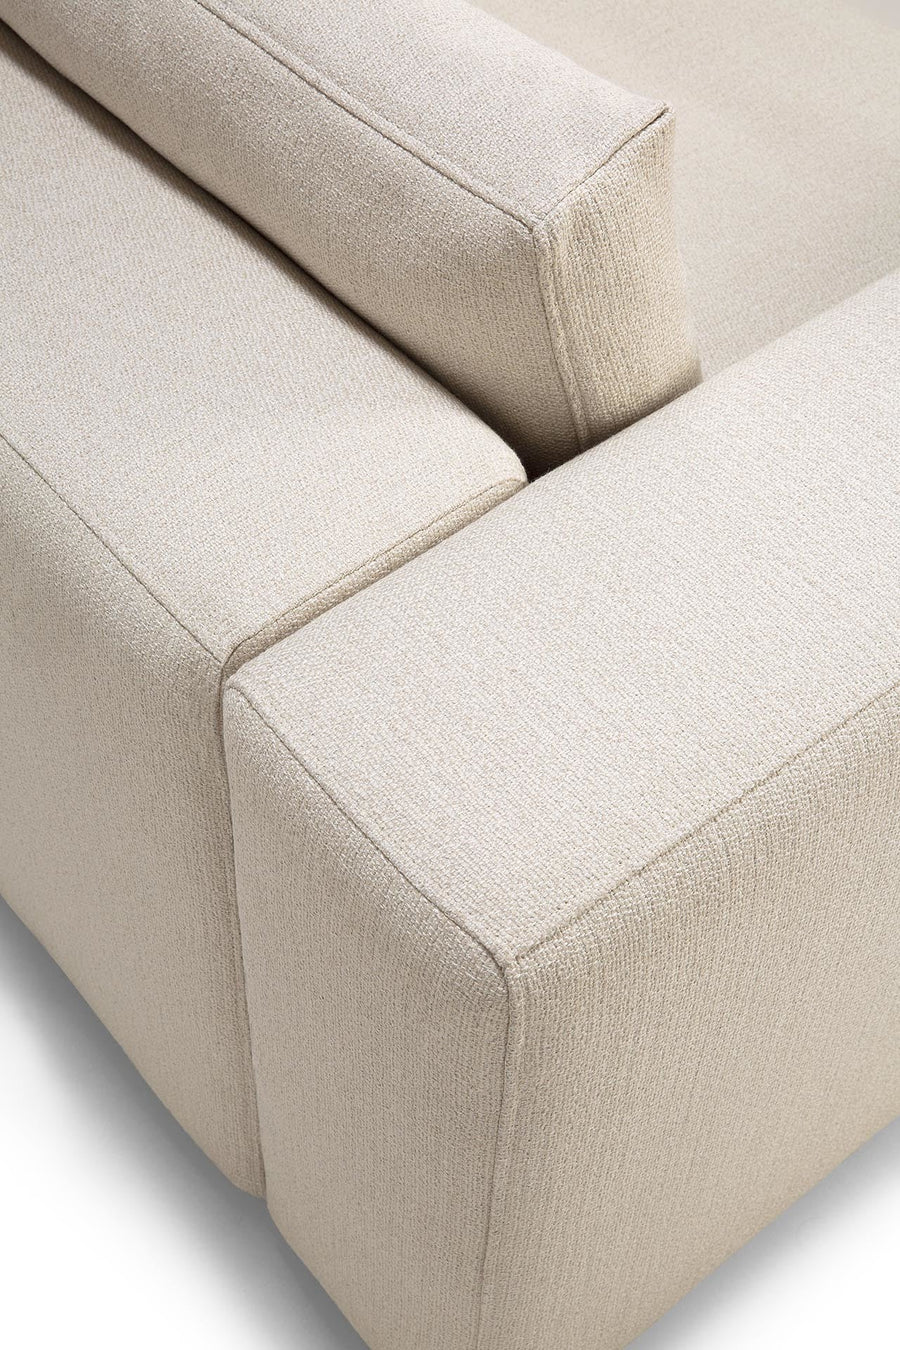 Mellow Sofa - Off White